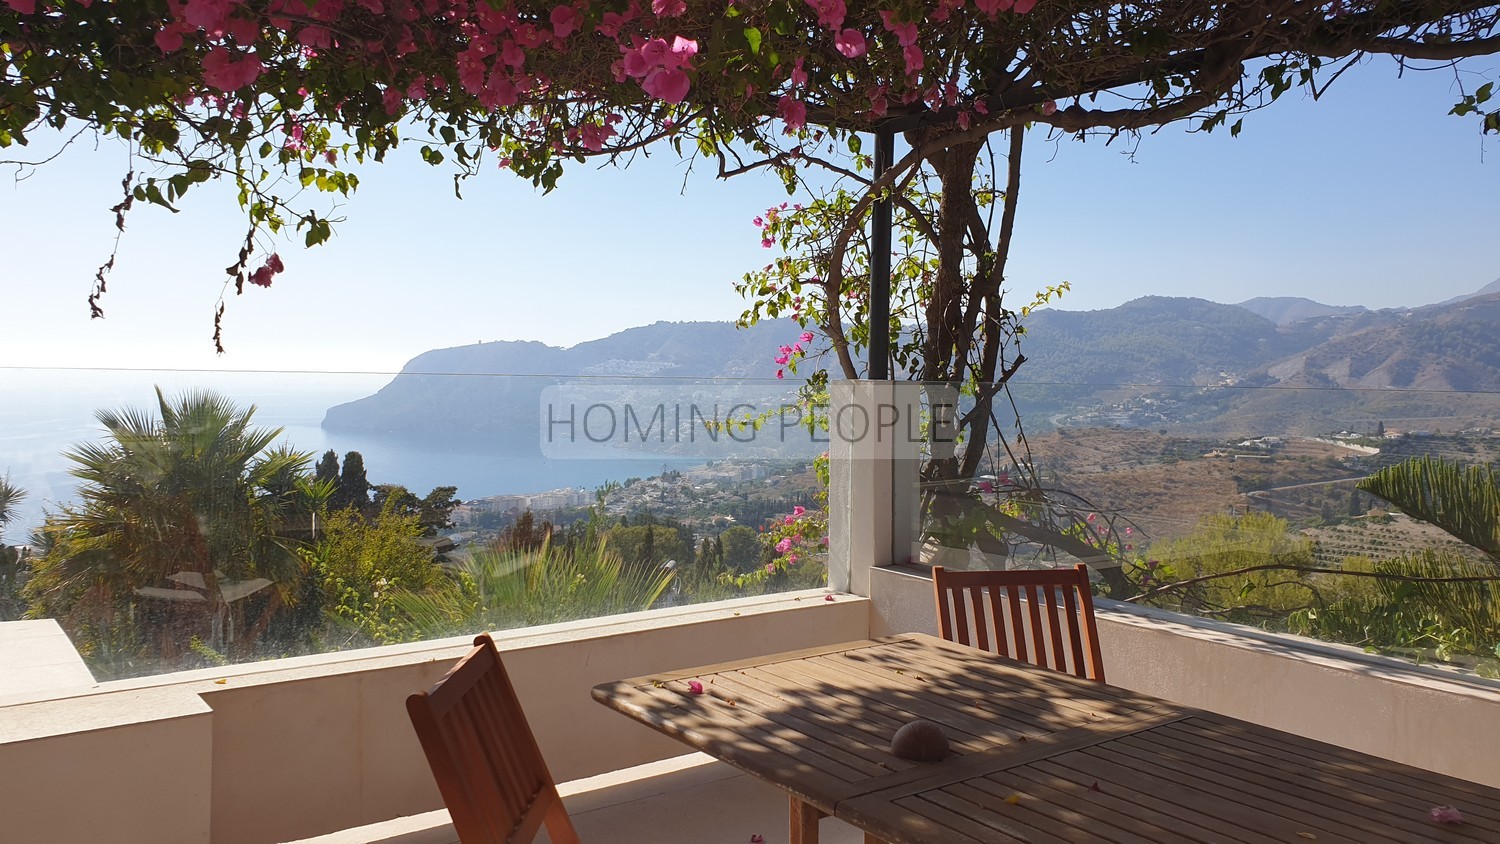 Villa de estilo andaluz con encanto: Vegetación, terrazas, piscina y unas vistas maravillosas a la bahía !